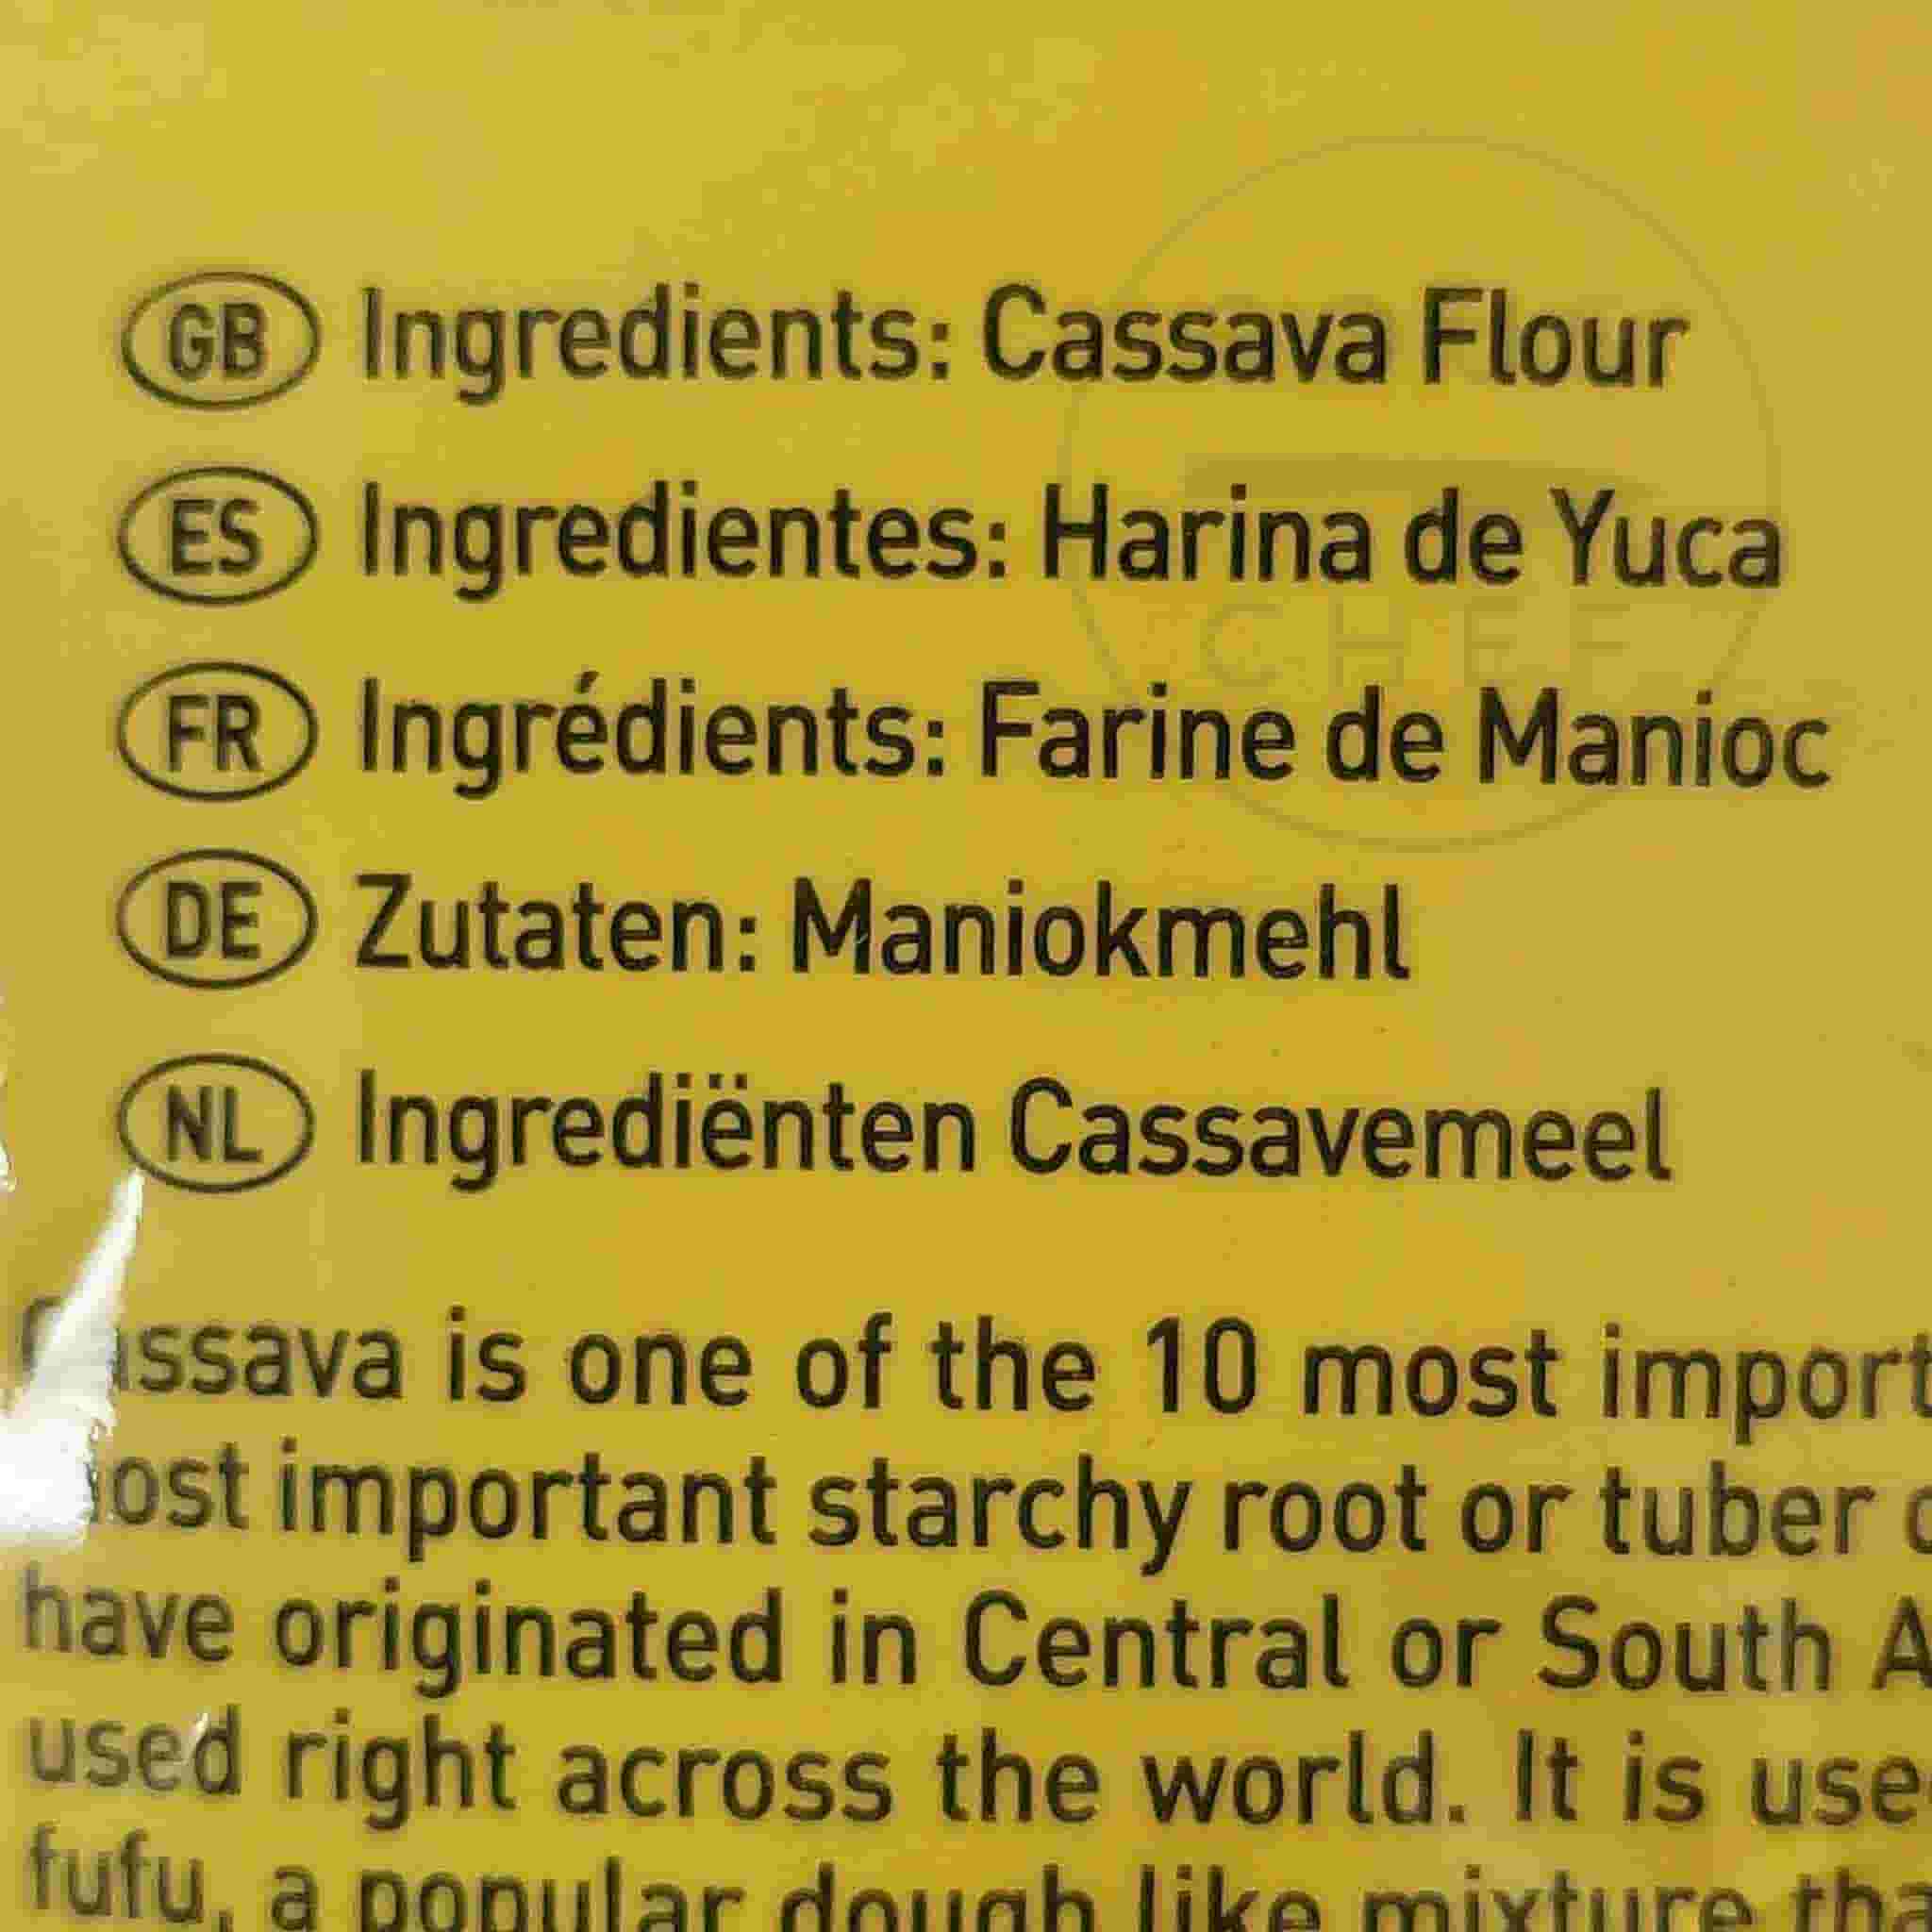 Africas Finest Cassava Flour, 1kg